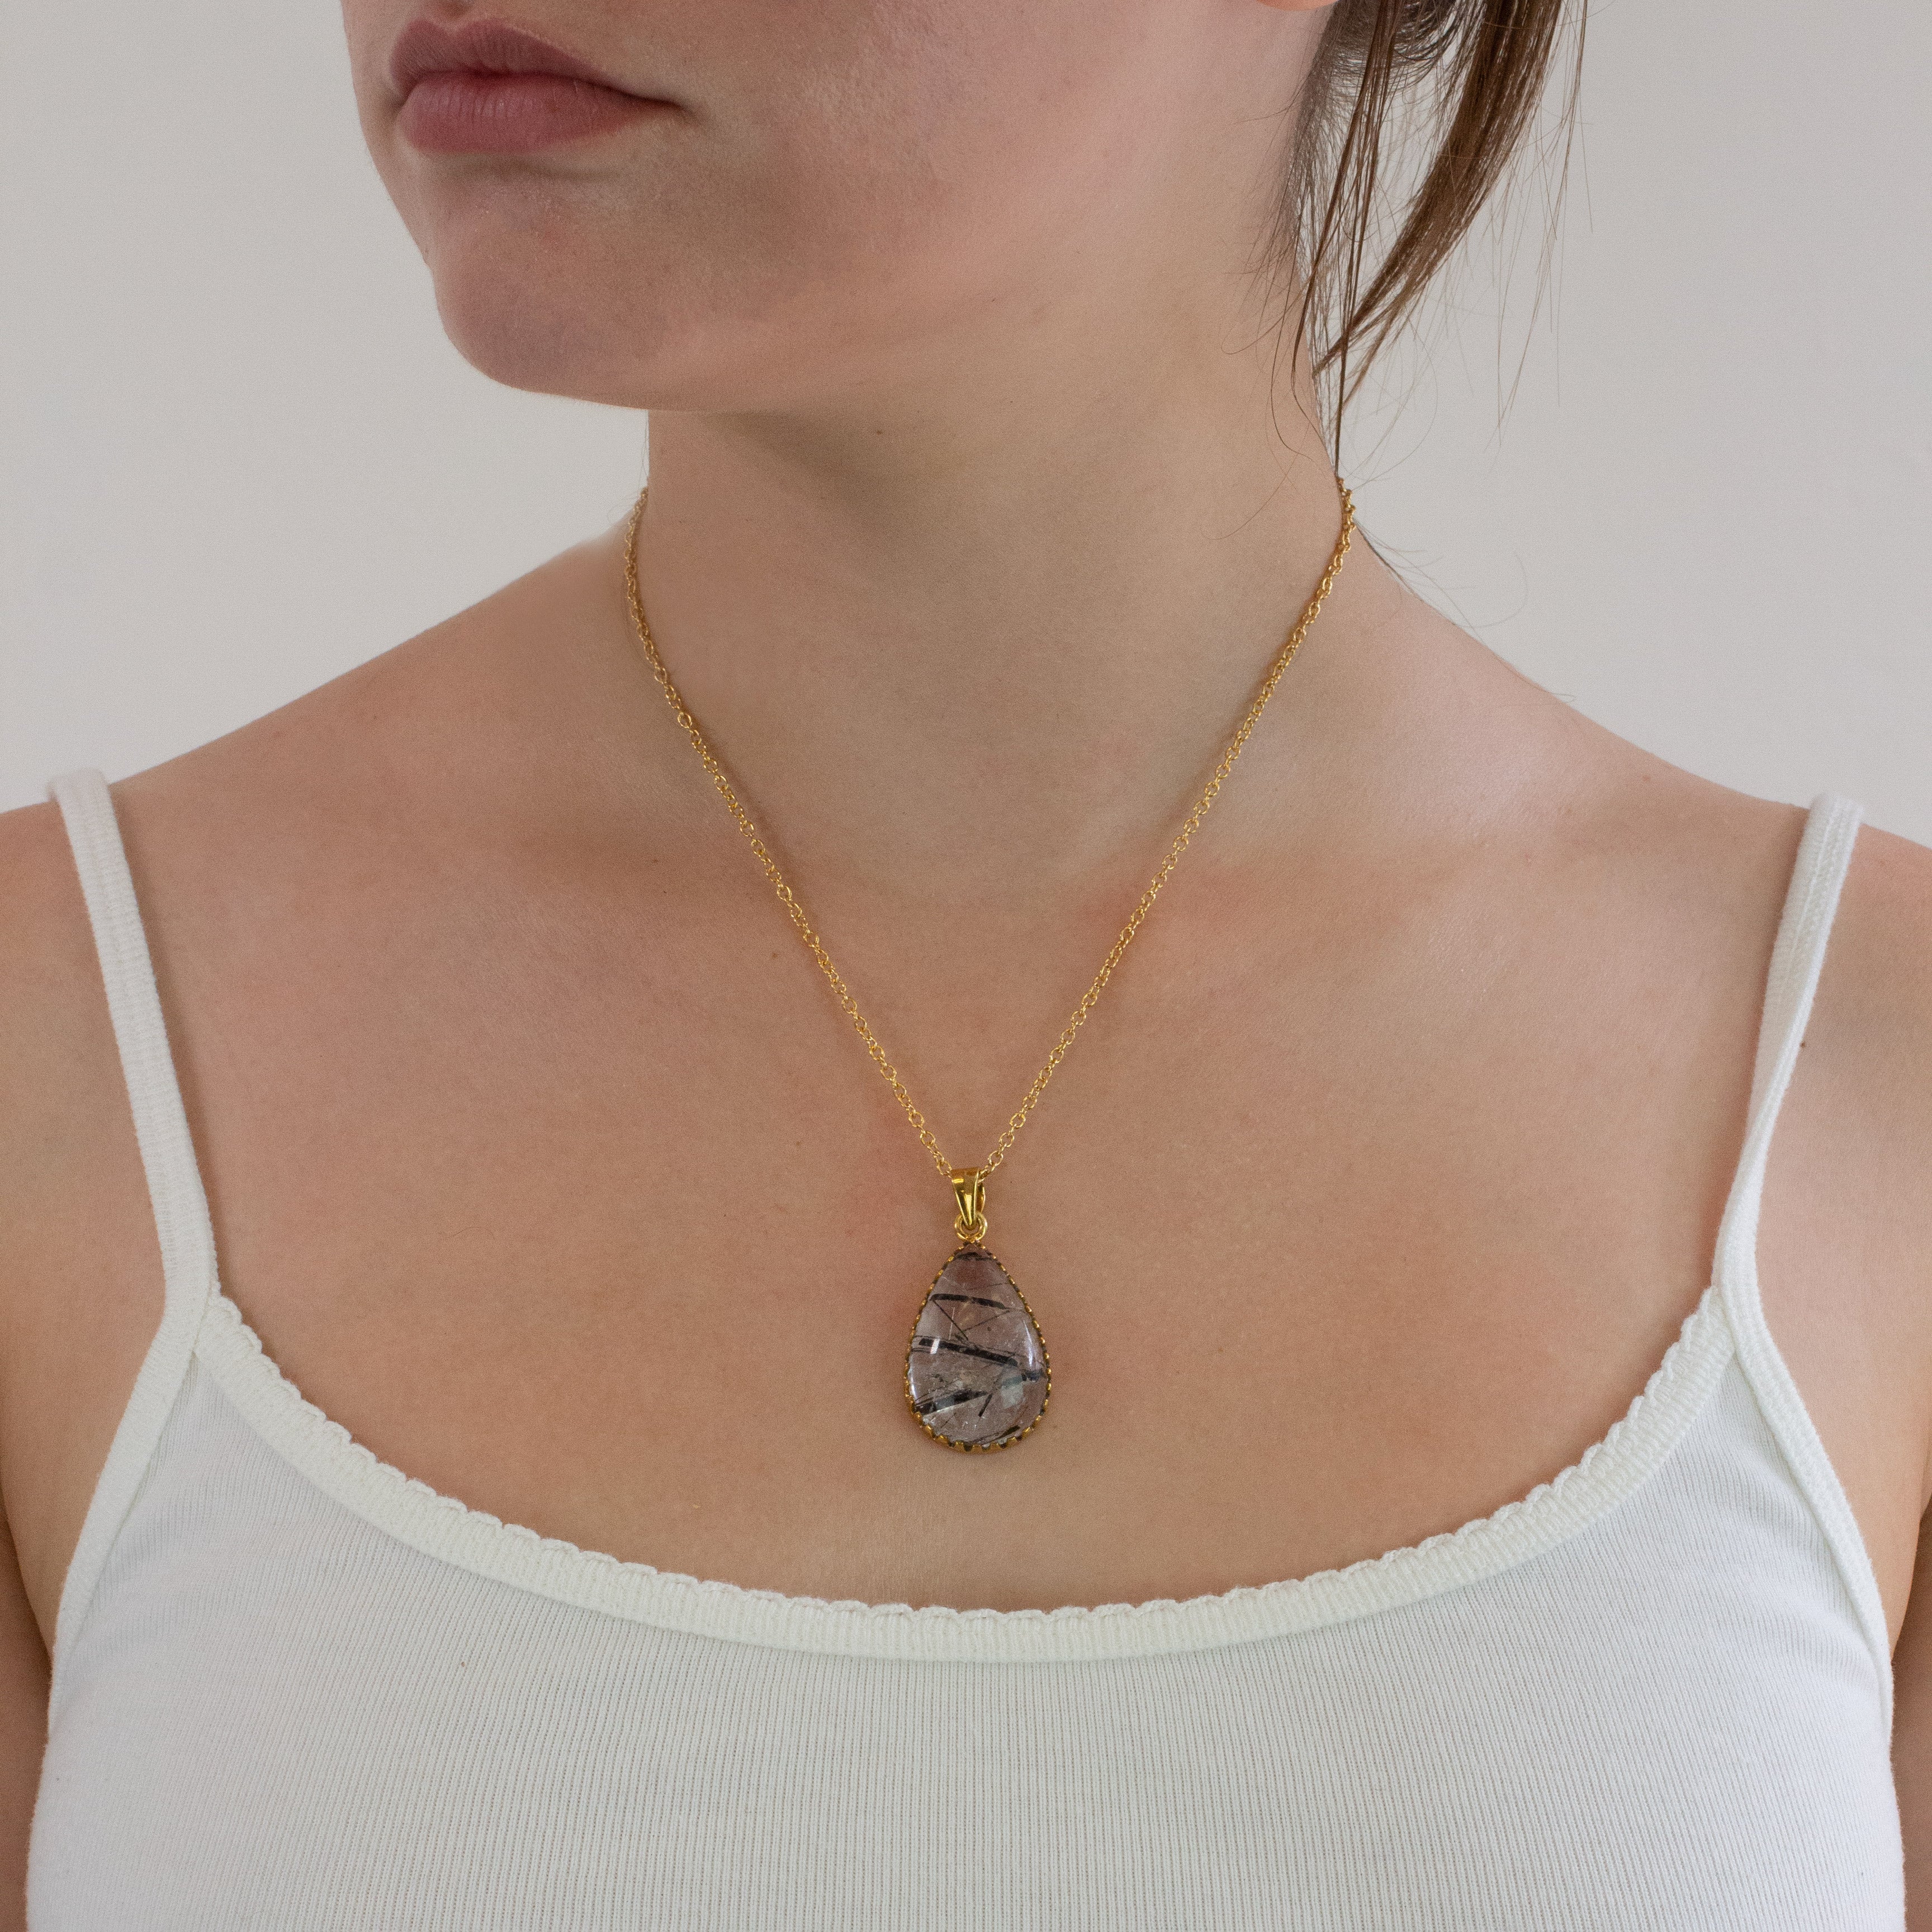 Tourmalinated quartz necklace on model